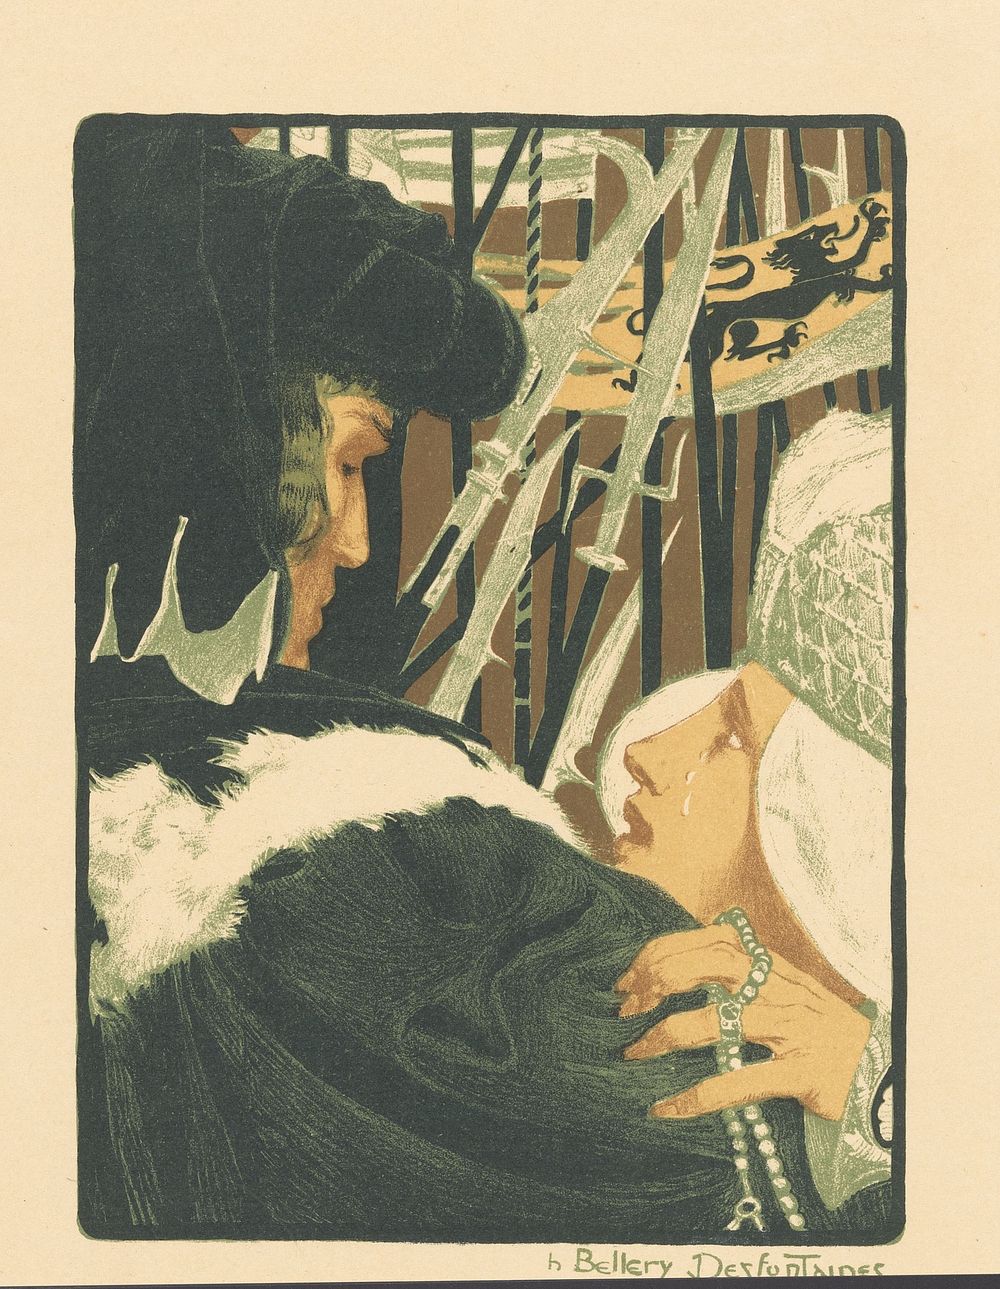 Vrouw met betraand gezicht smeekt een man (1898) by Henri Jules Ferdinand Bellery Desfontaines